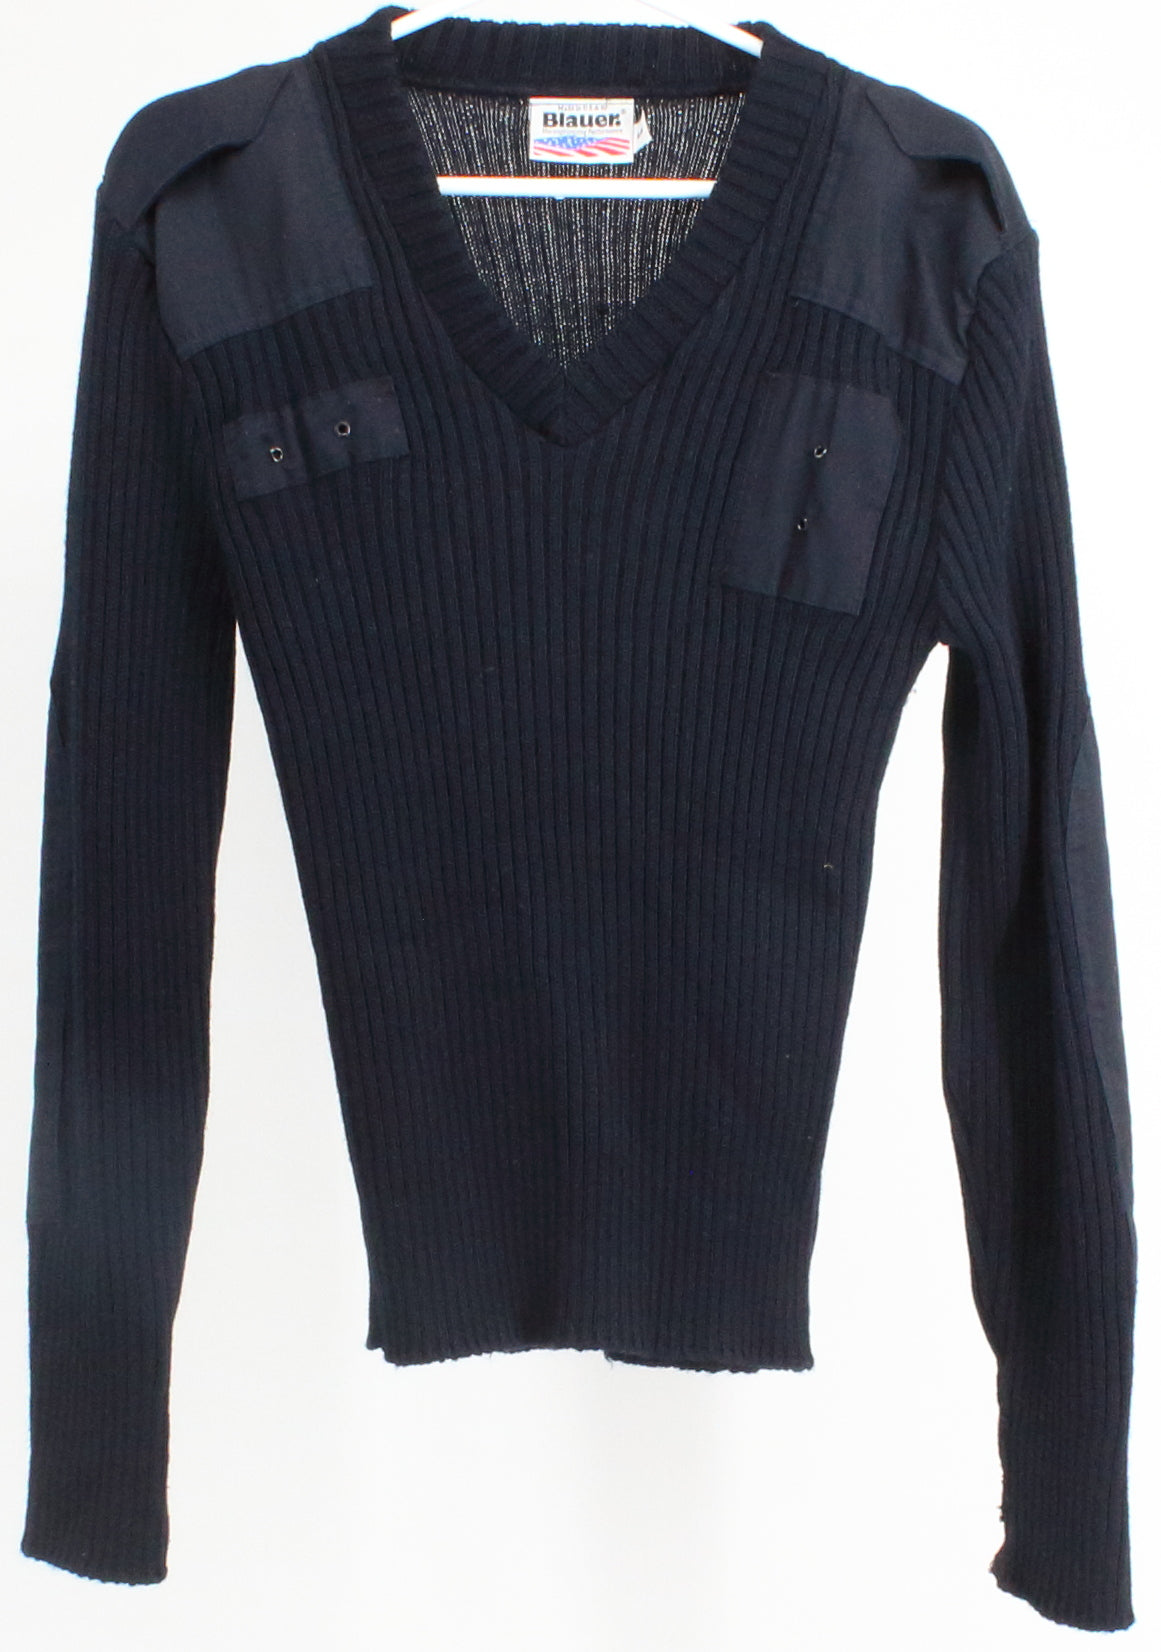 Blauer V-Neck Navy Blue Sweater